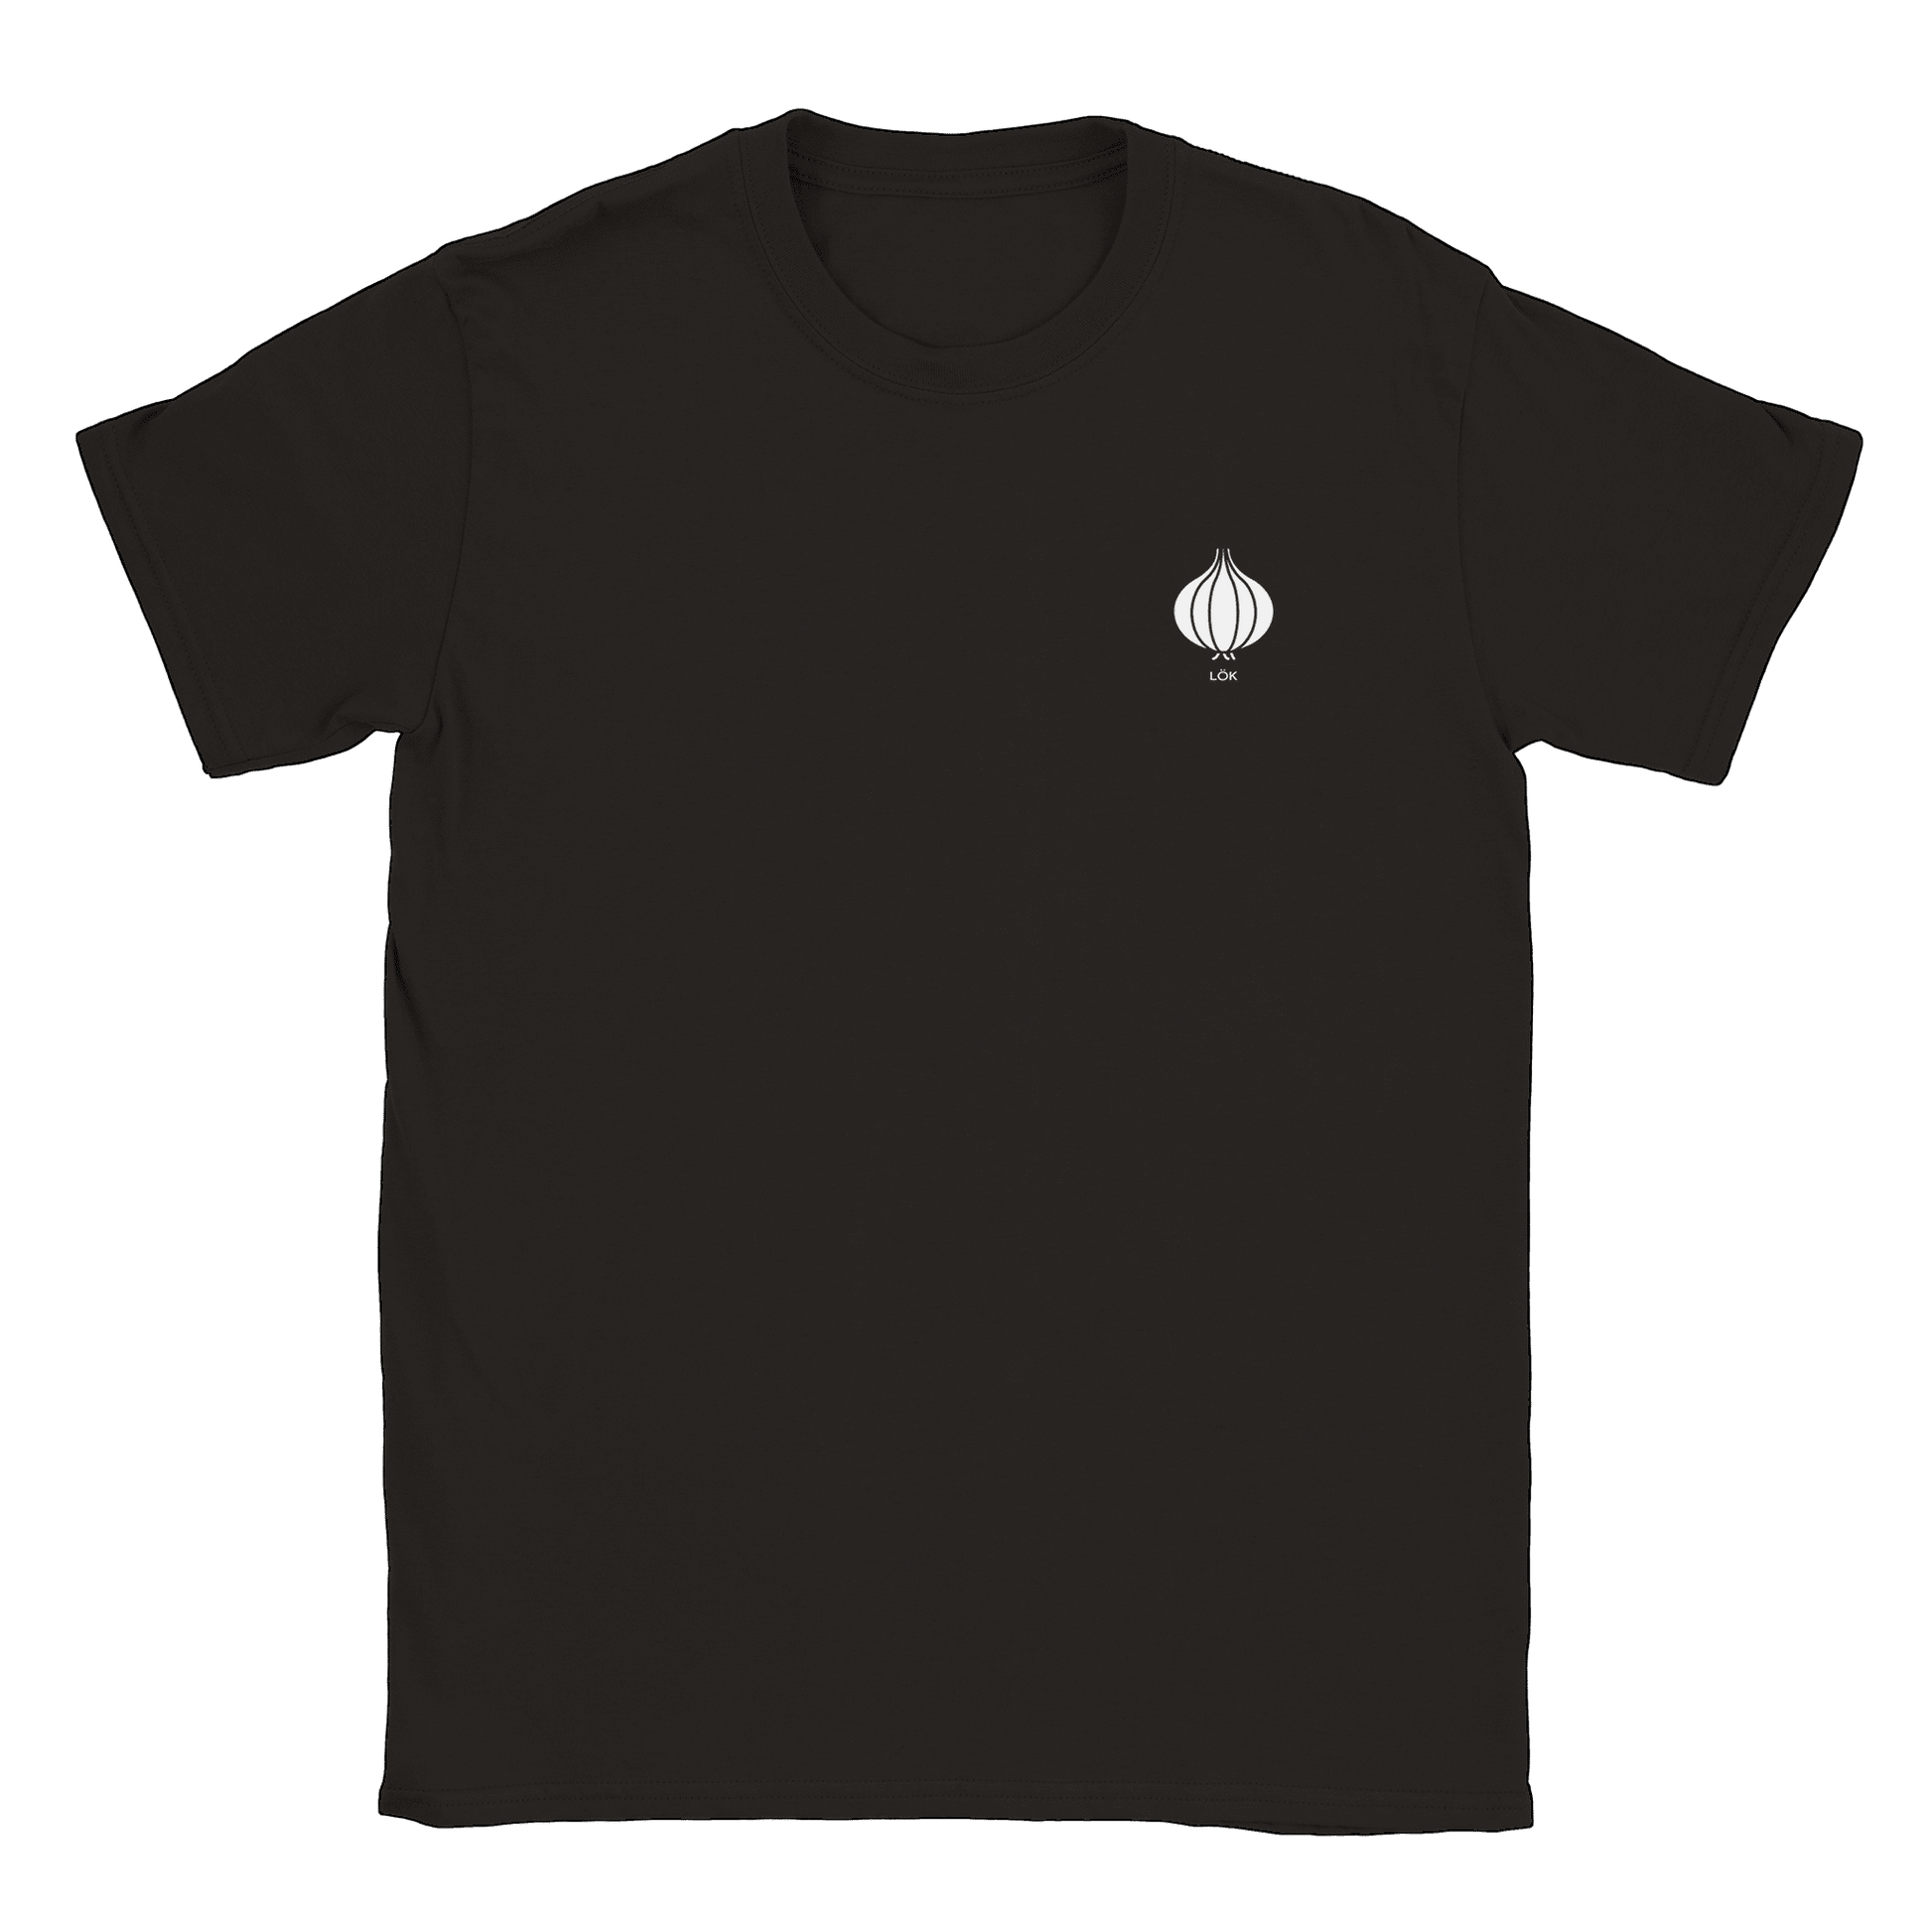 Lök liten - T-shirt Svart